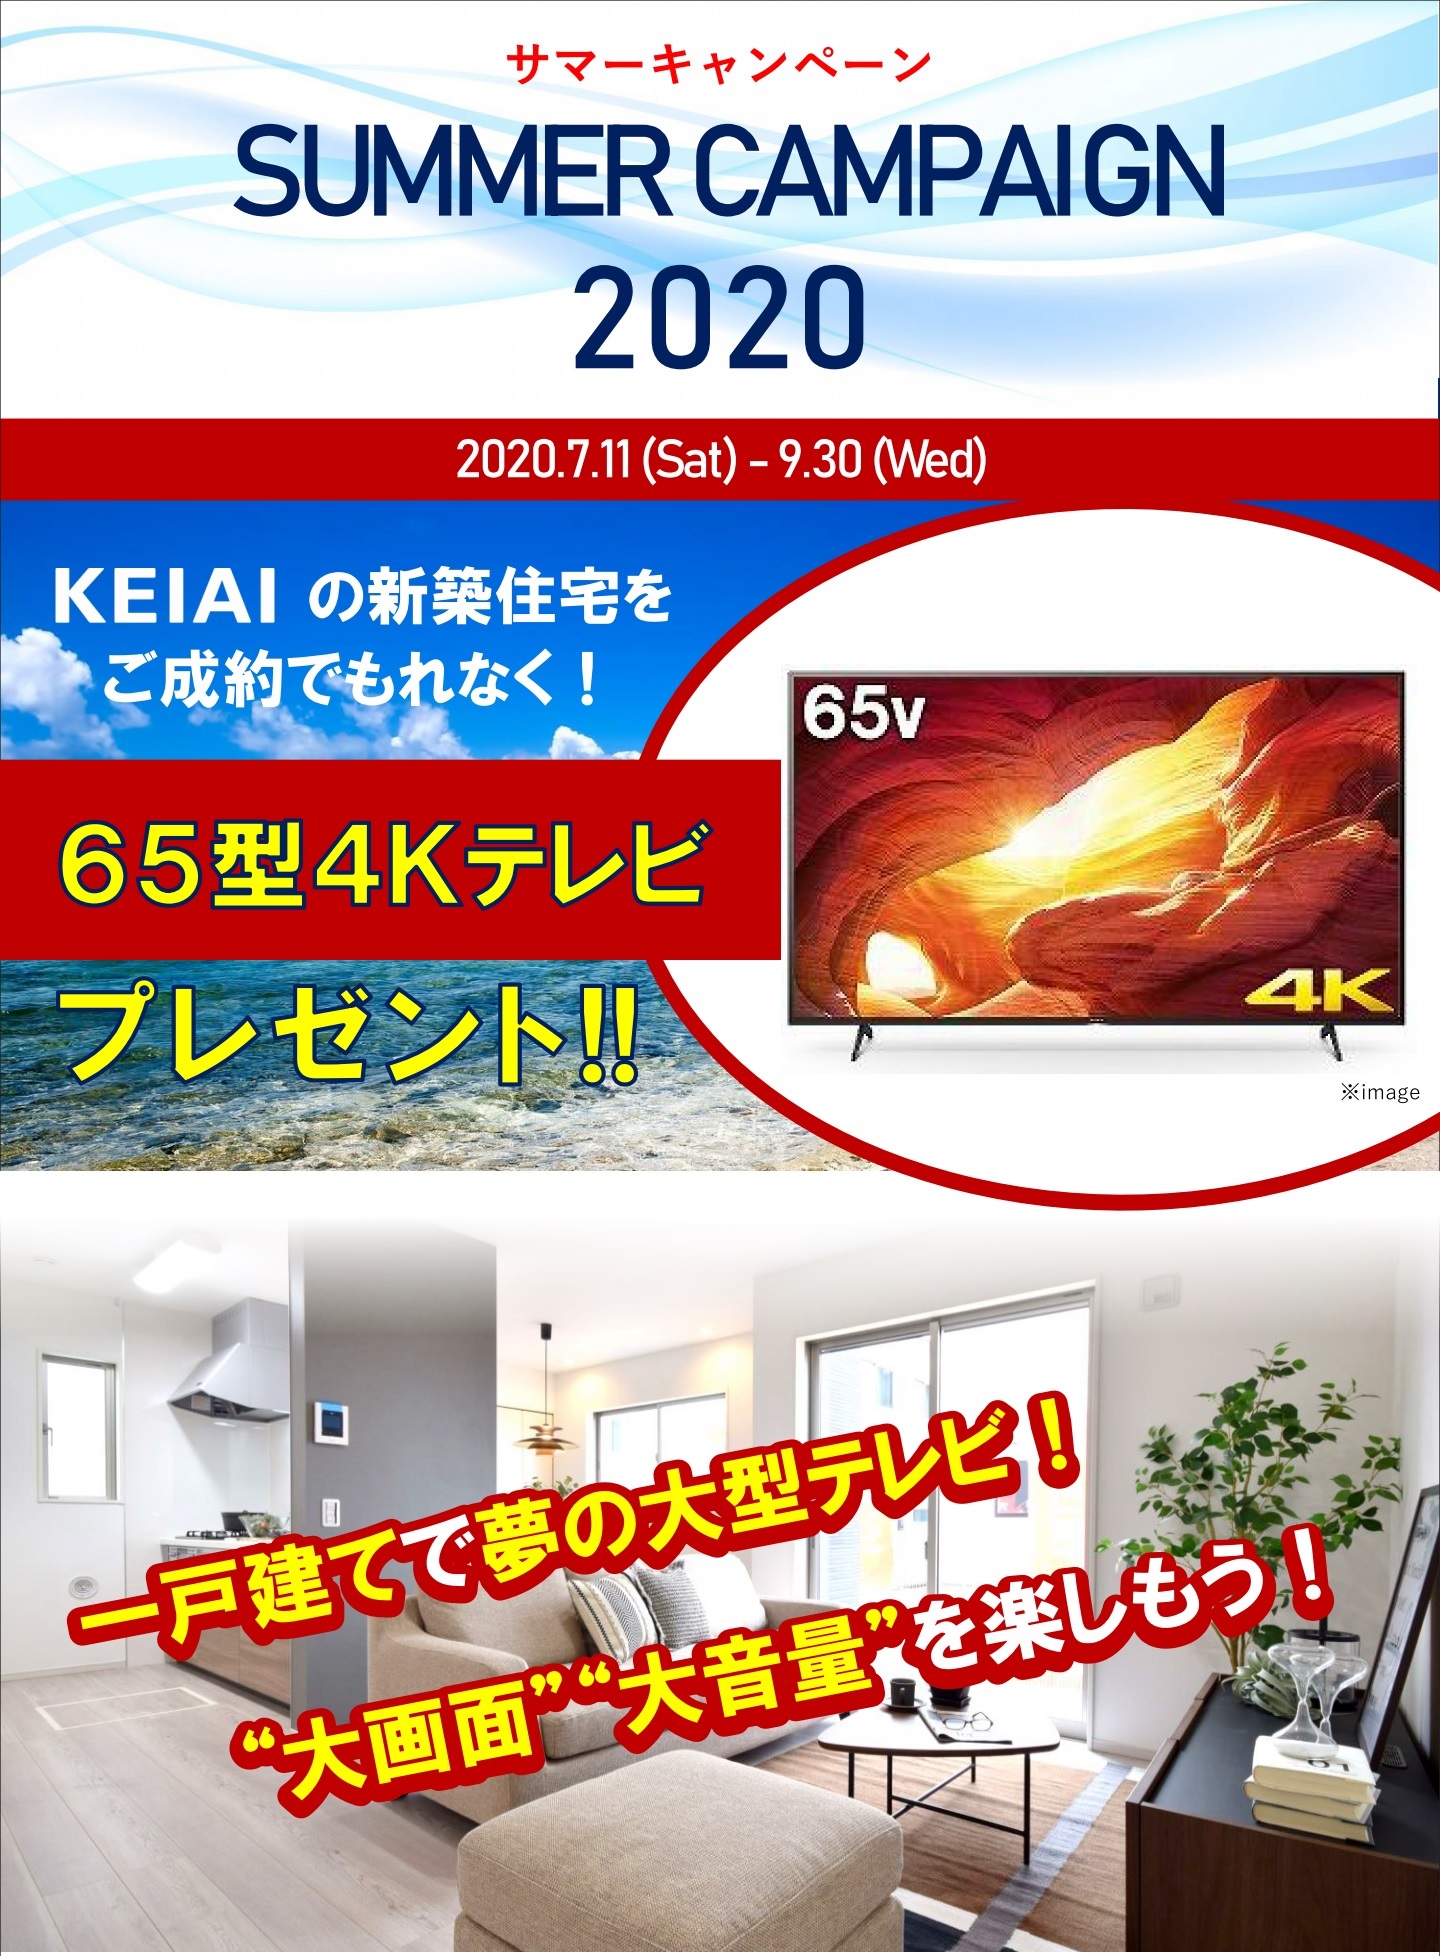 サマーキャンペーン開催 ケイアイスター不動産グループ Keiai 分譲住宅 注文住宅